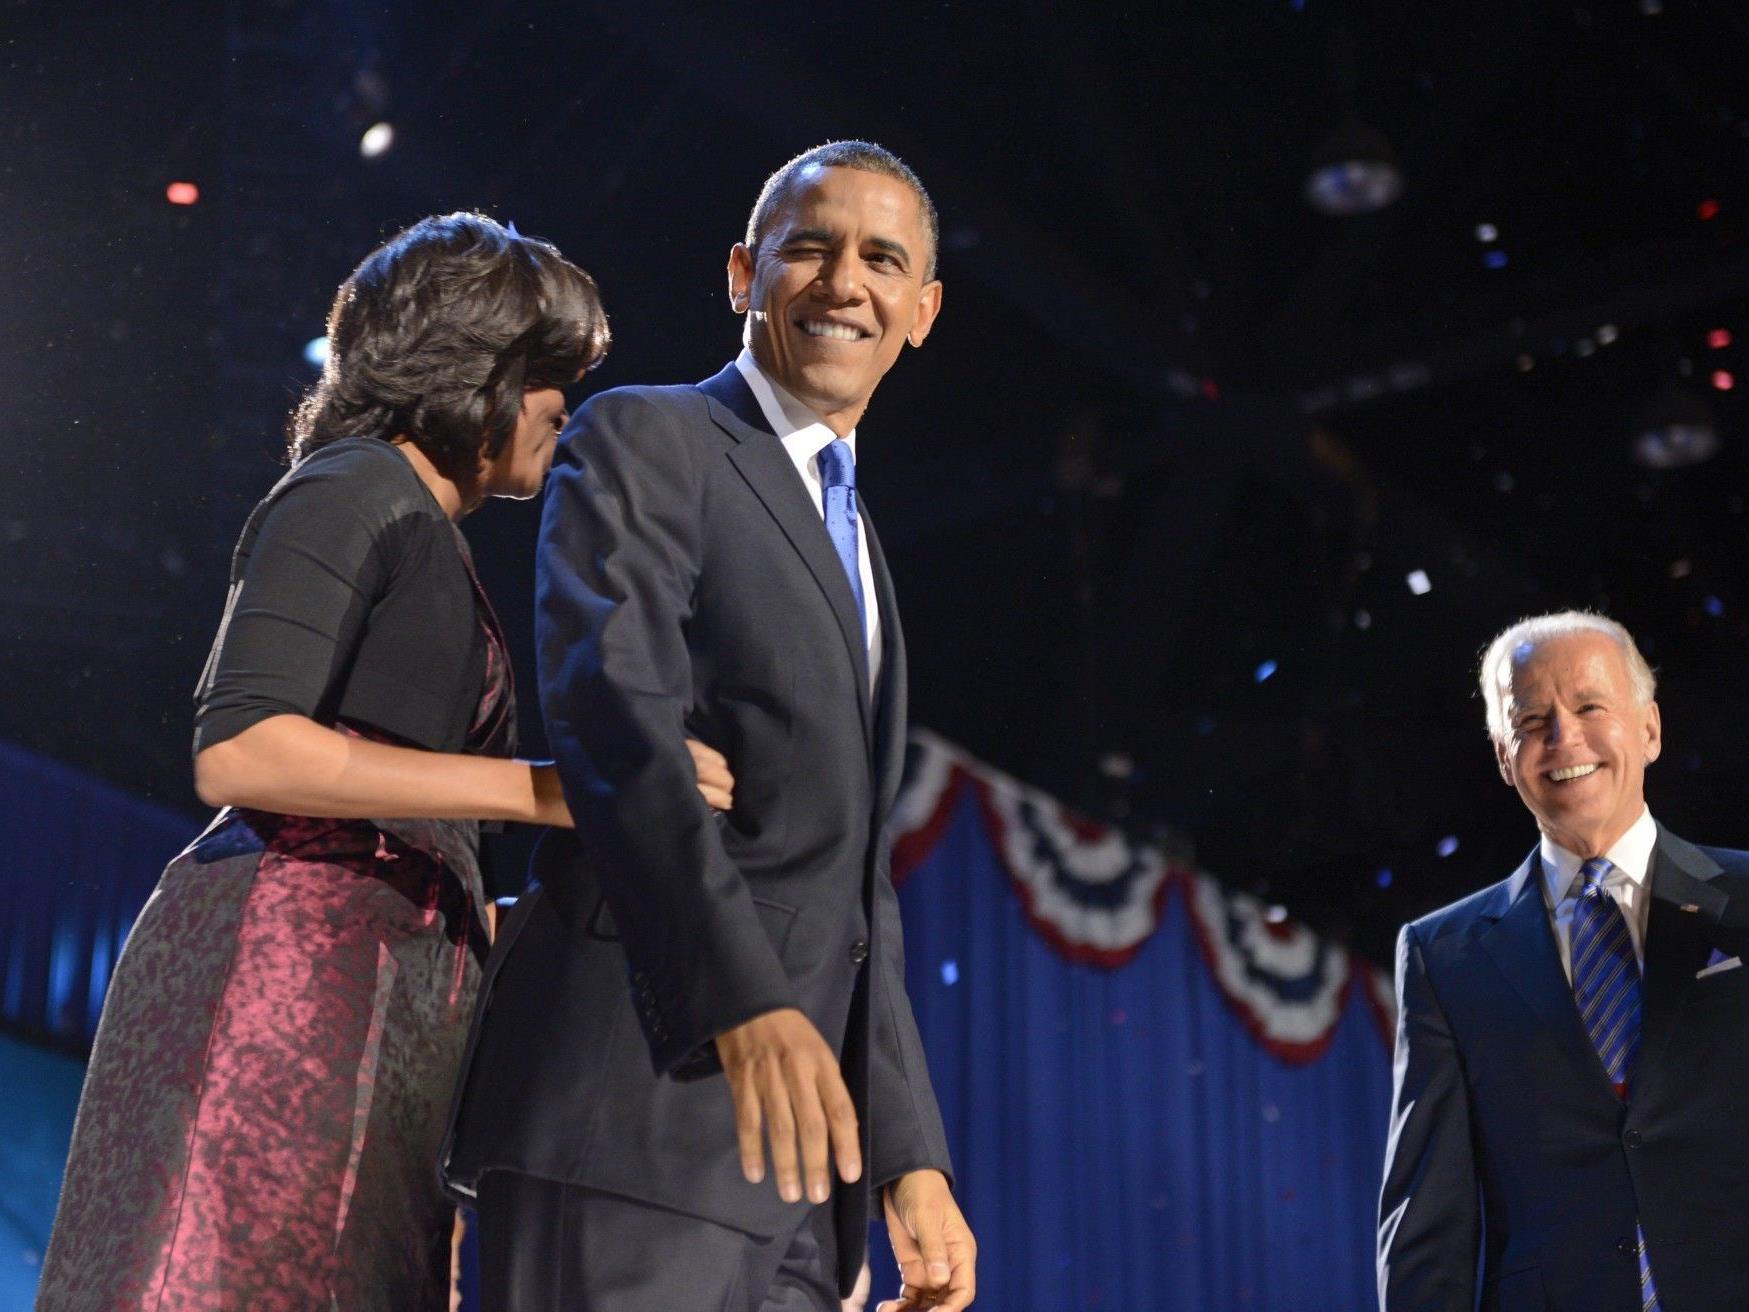 "Four more years": Obama erklärt sich zum Sieger.